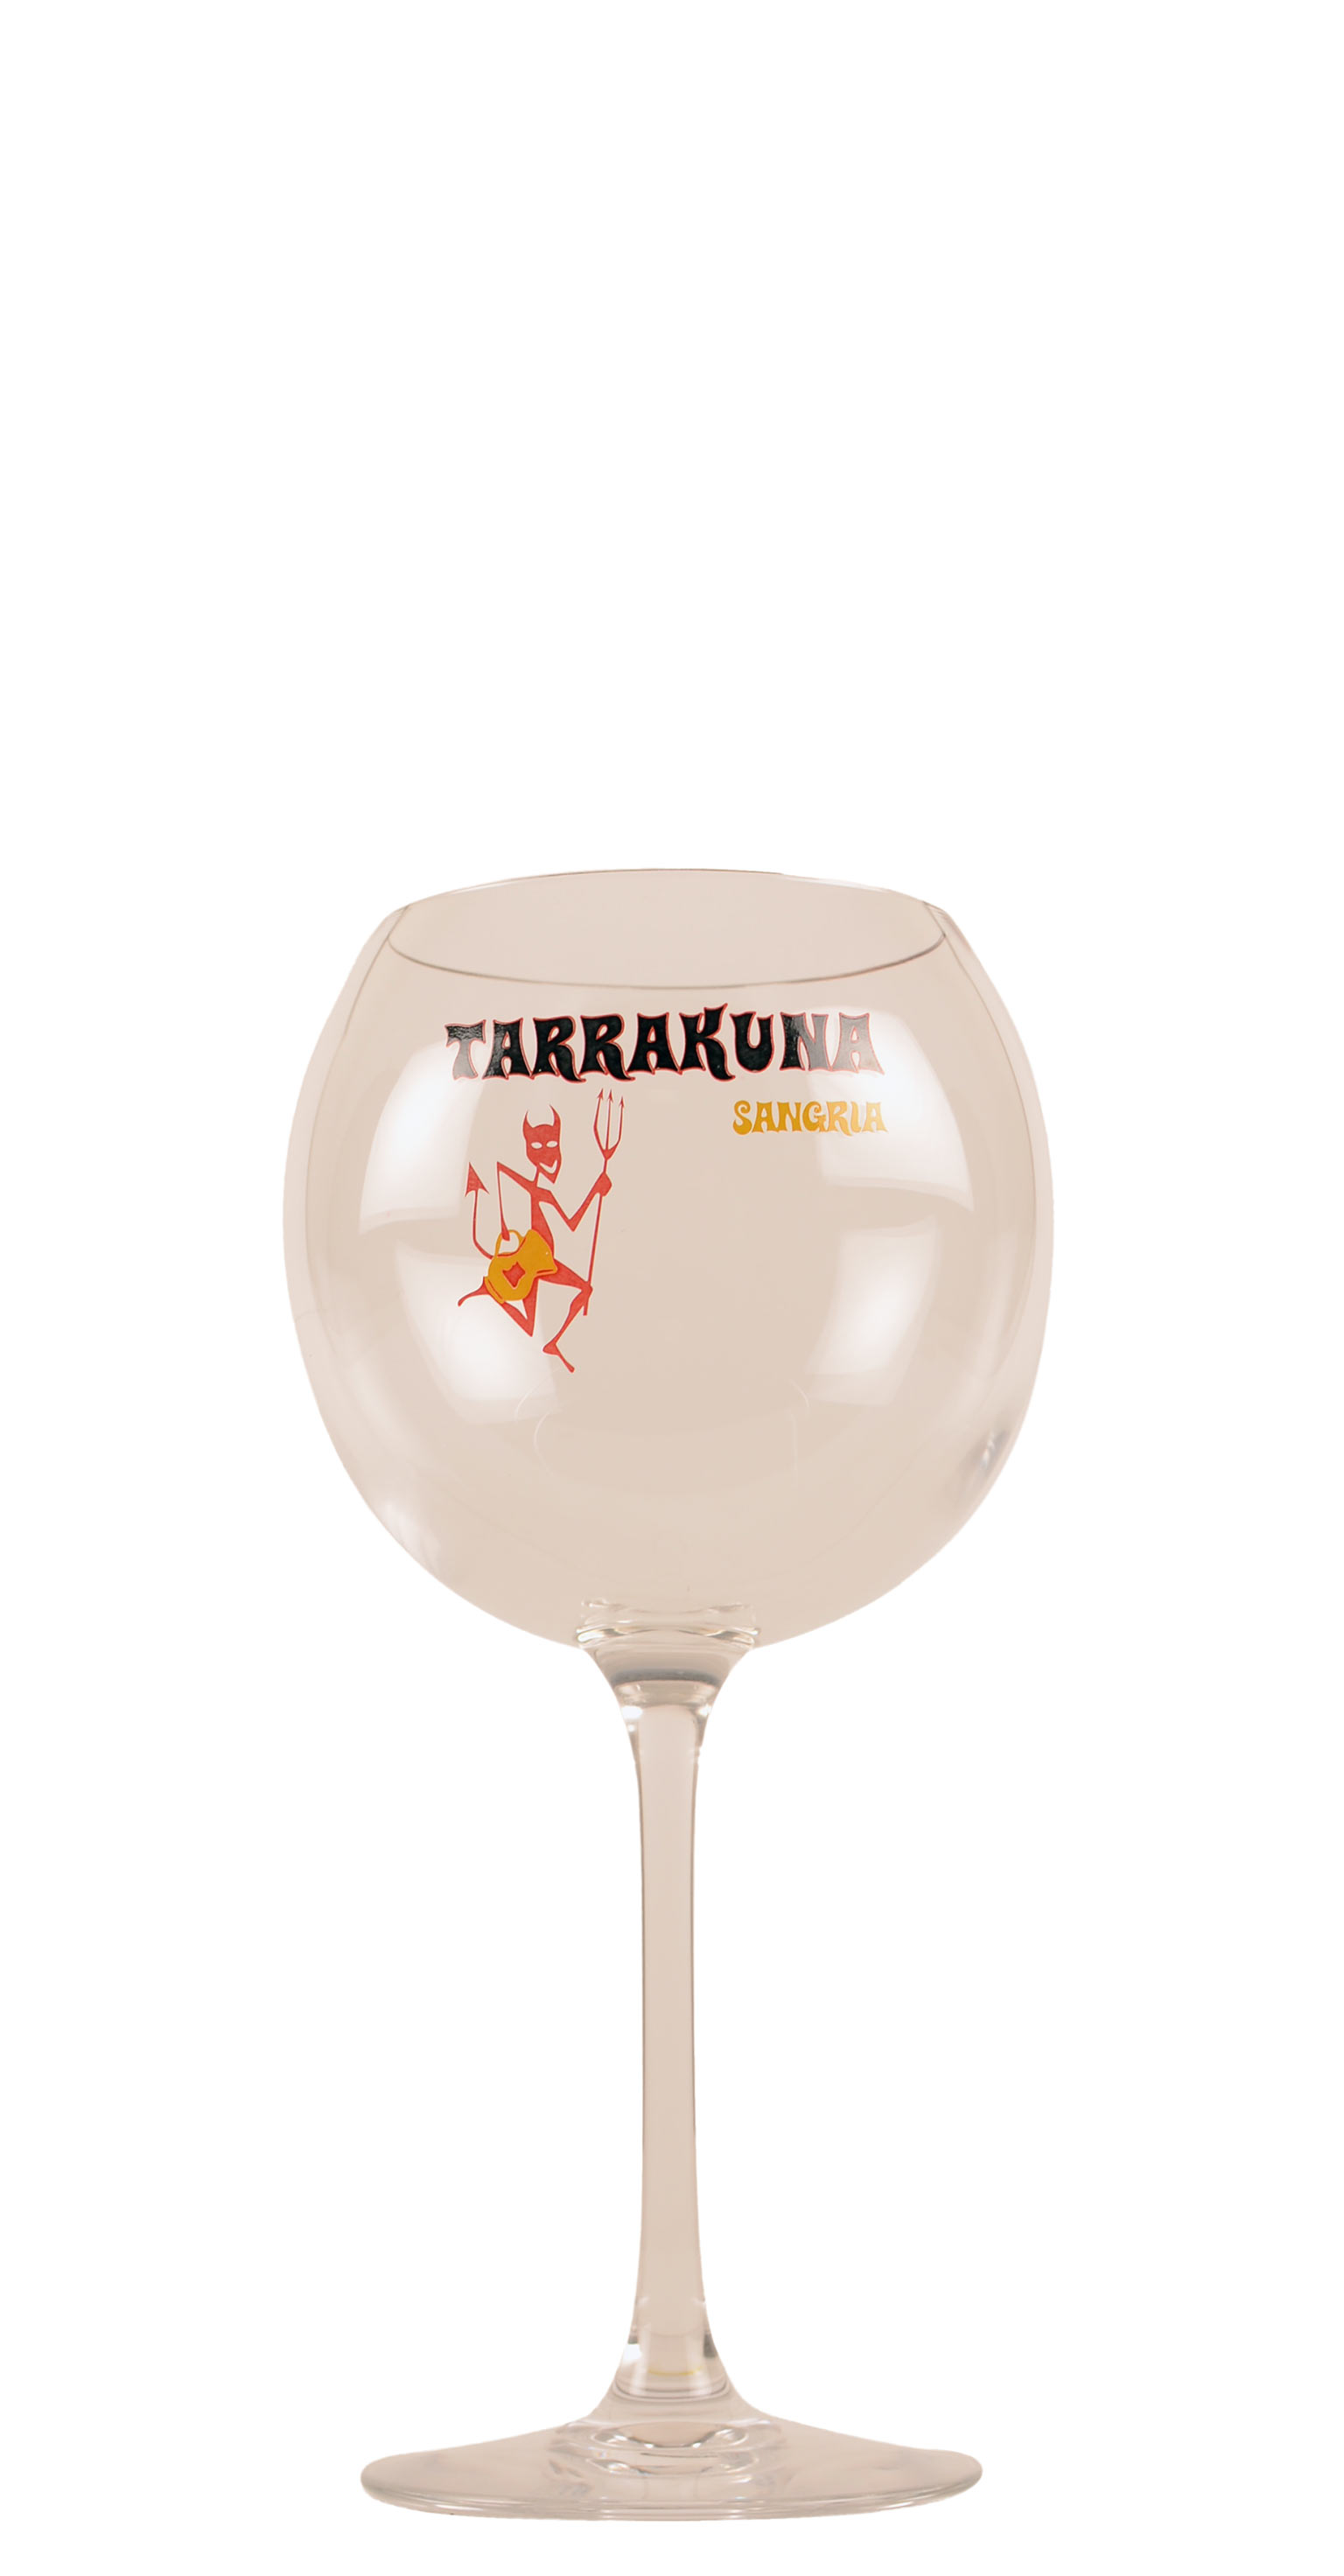 Sangria - glas Cabernet - Bedrukt Tarrakuna 58 cl | Het Wijnhuis Smaakshop BE